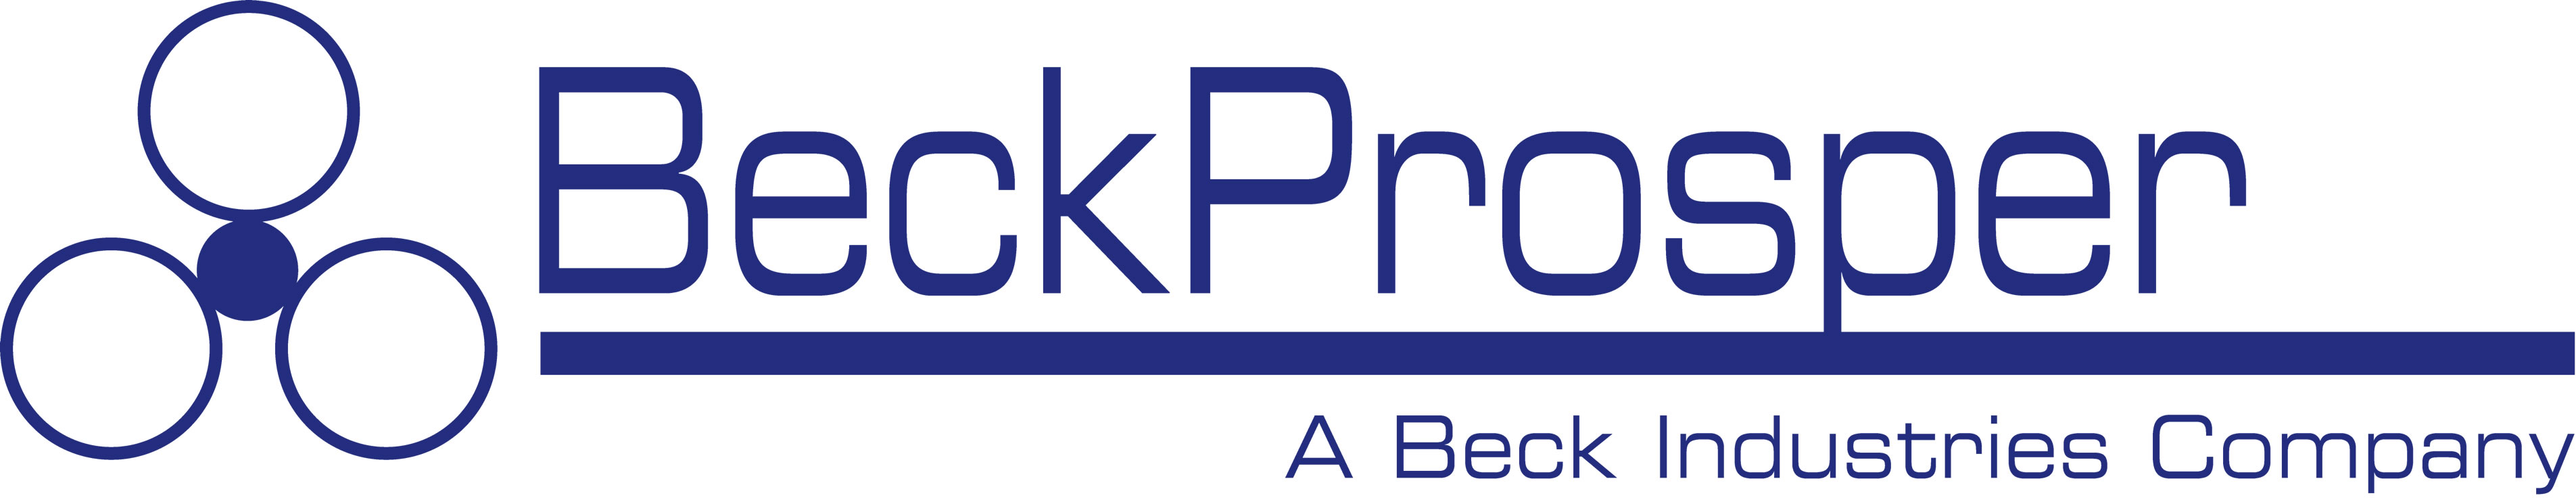 Beck Prosper Limited